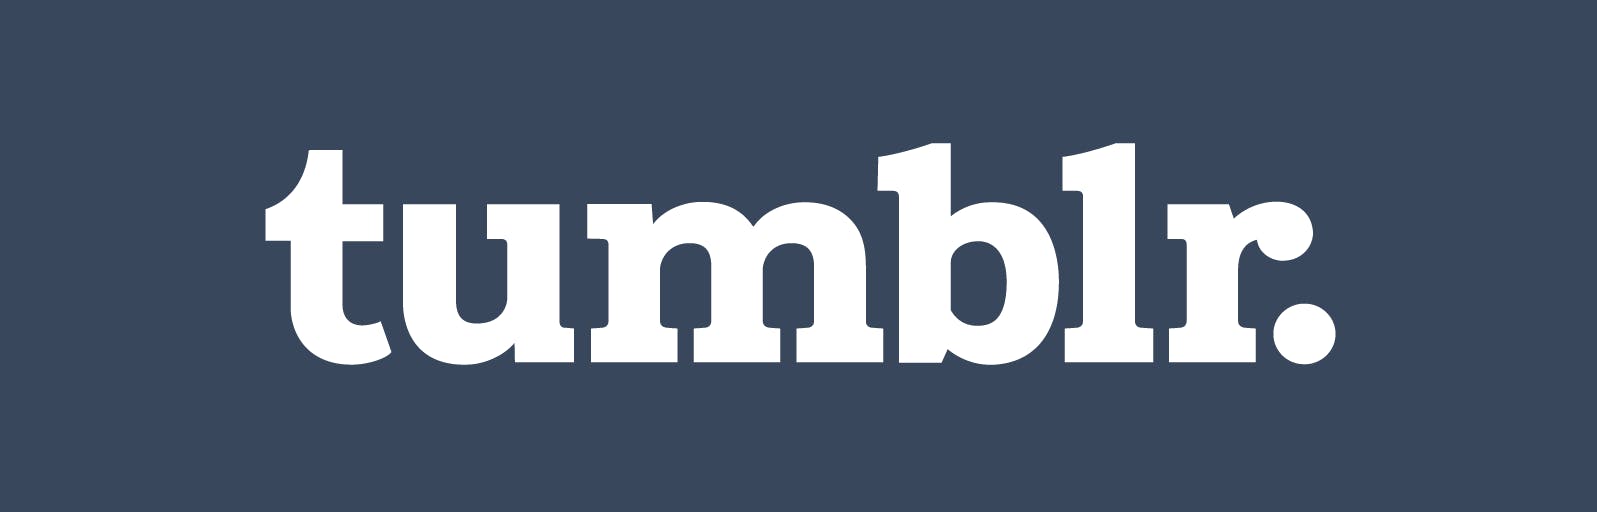 tumblr social media logo